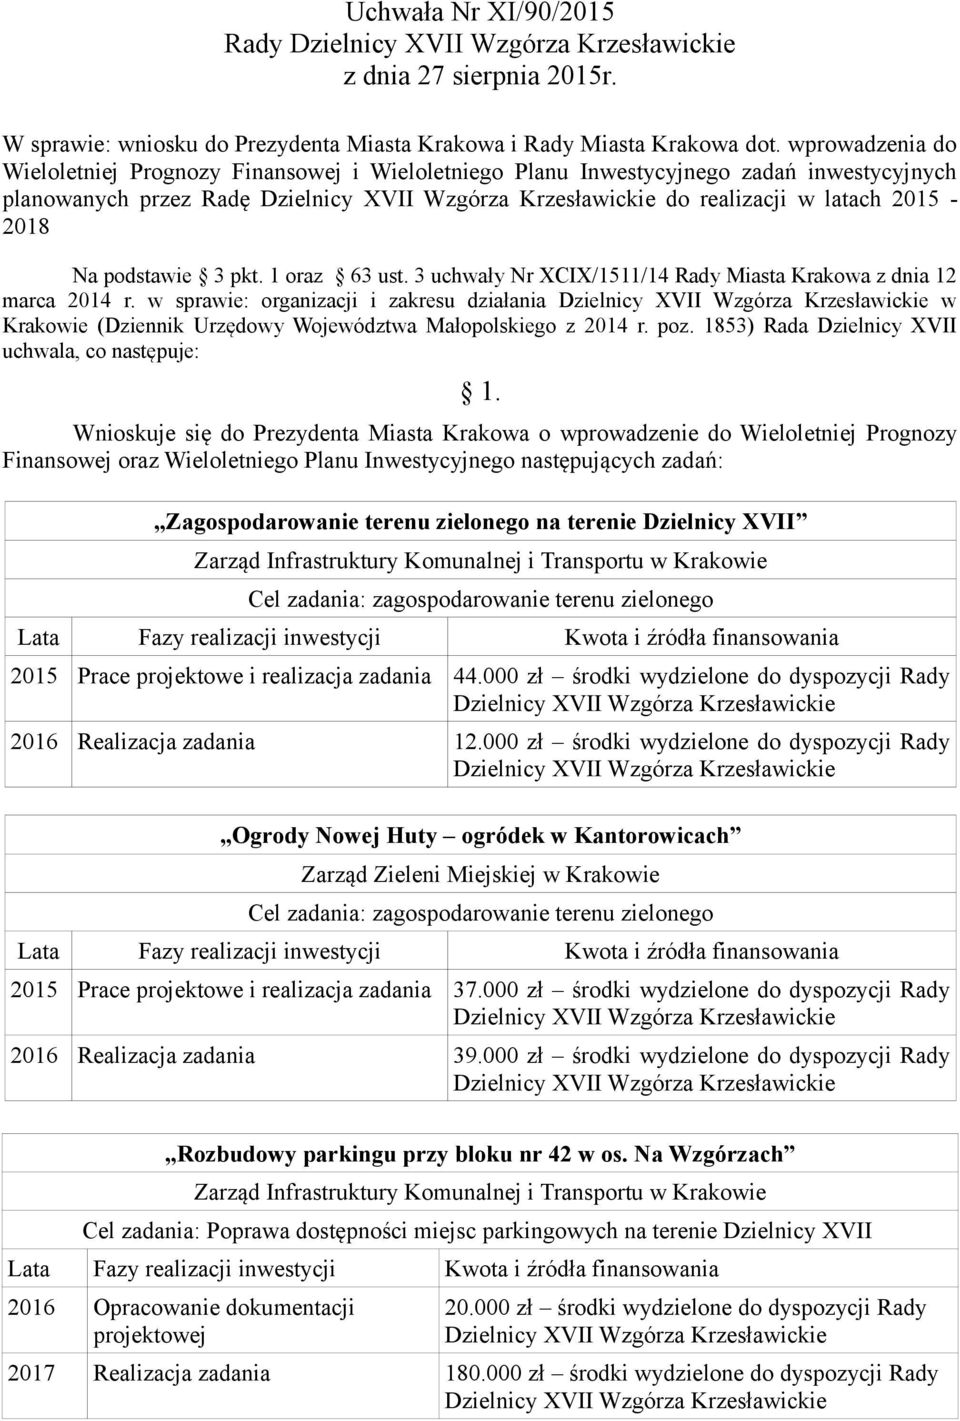 3 uchwały Nr XCIX/1511/14 Rady Miasta Krakowa z dnia 12 marca 2014 r. w sprawie: organizacji i zakresu działania w Krakowie (Dziennik Urzędowy Województwa Małopolskiego z 2014 r. poz.